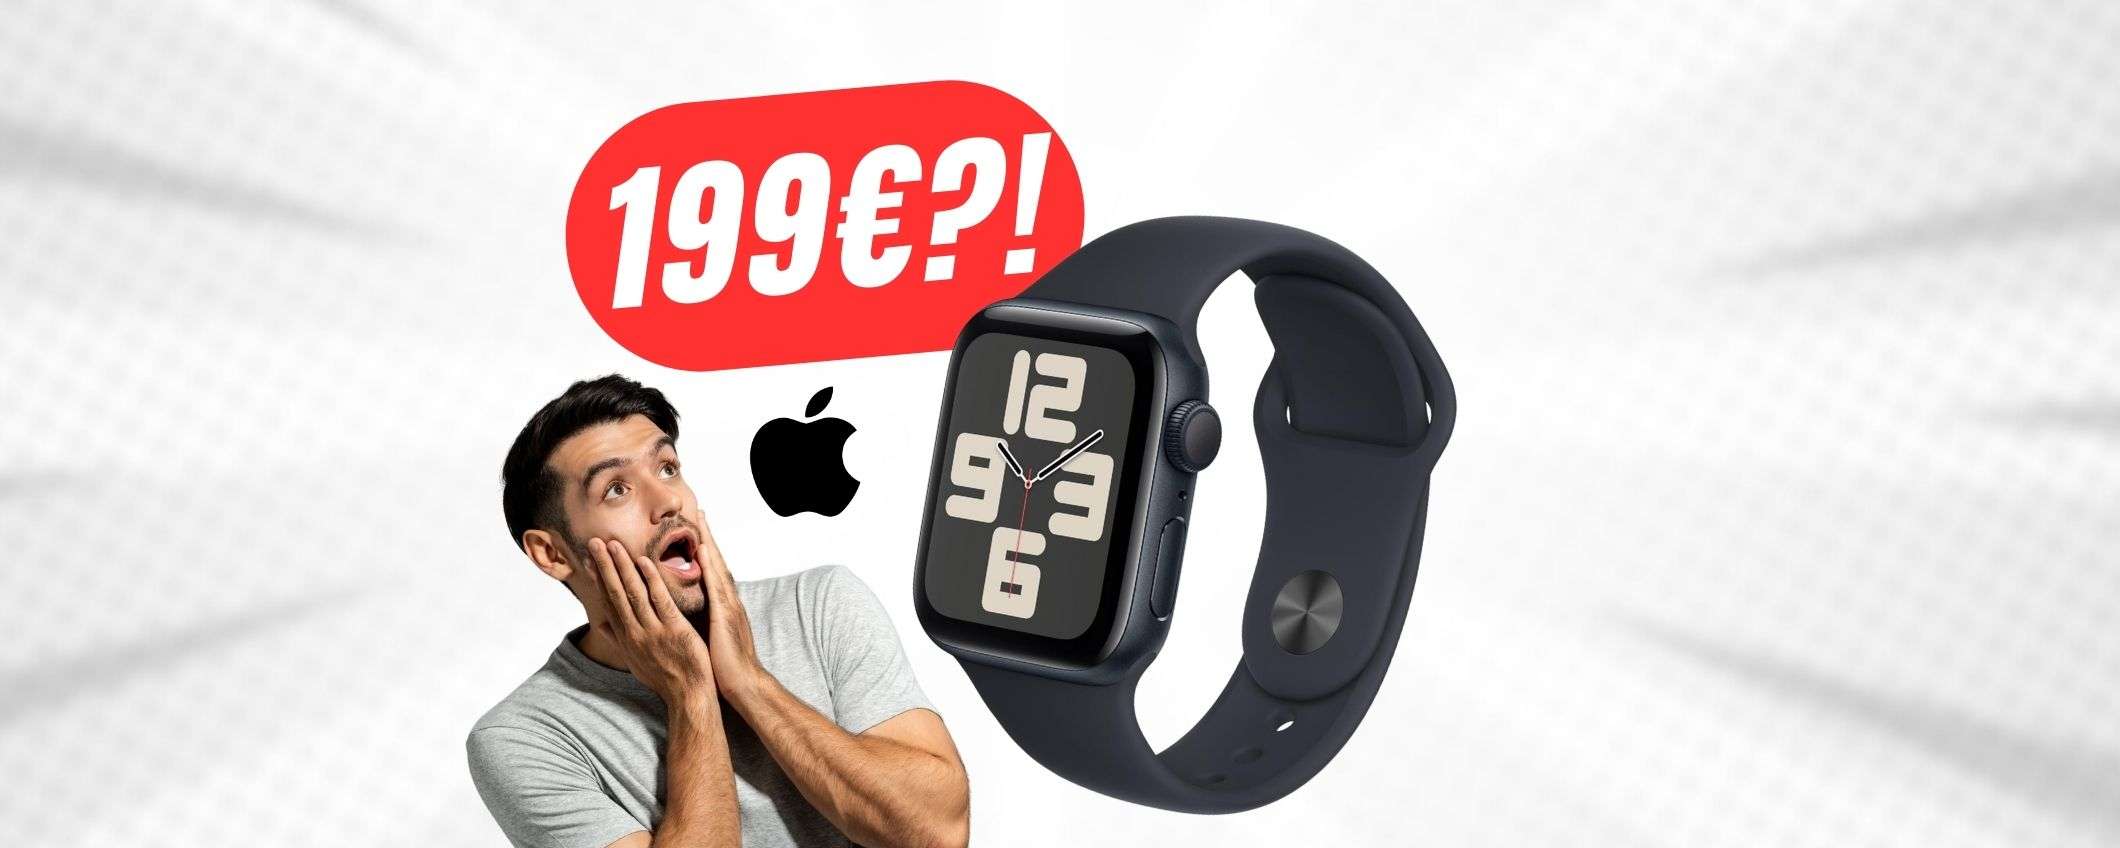 Apple Watch SE a 199€?! MINIMO STORICO per lo smartwatch della mela!